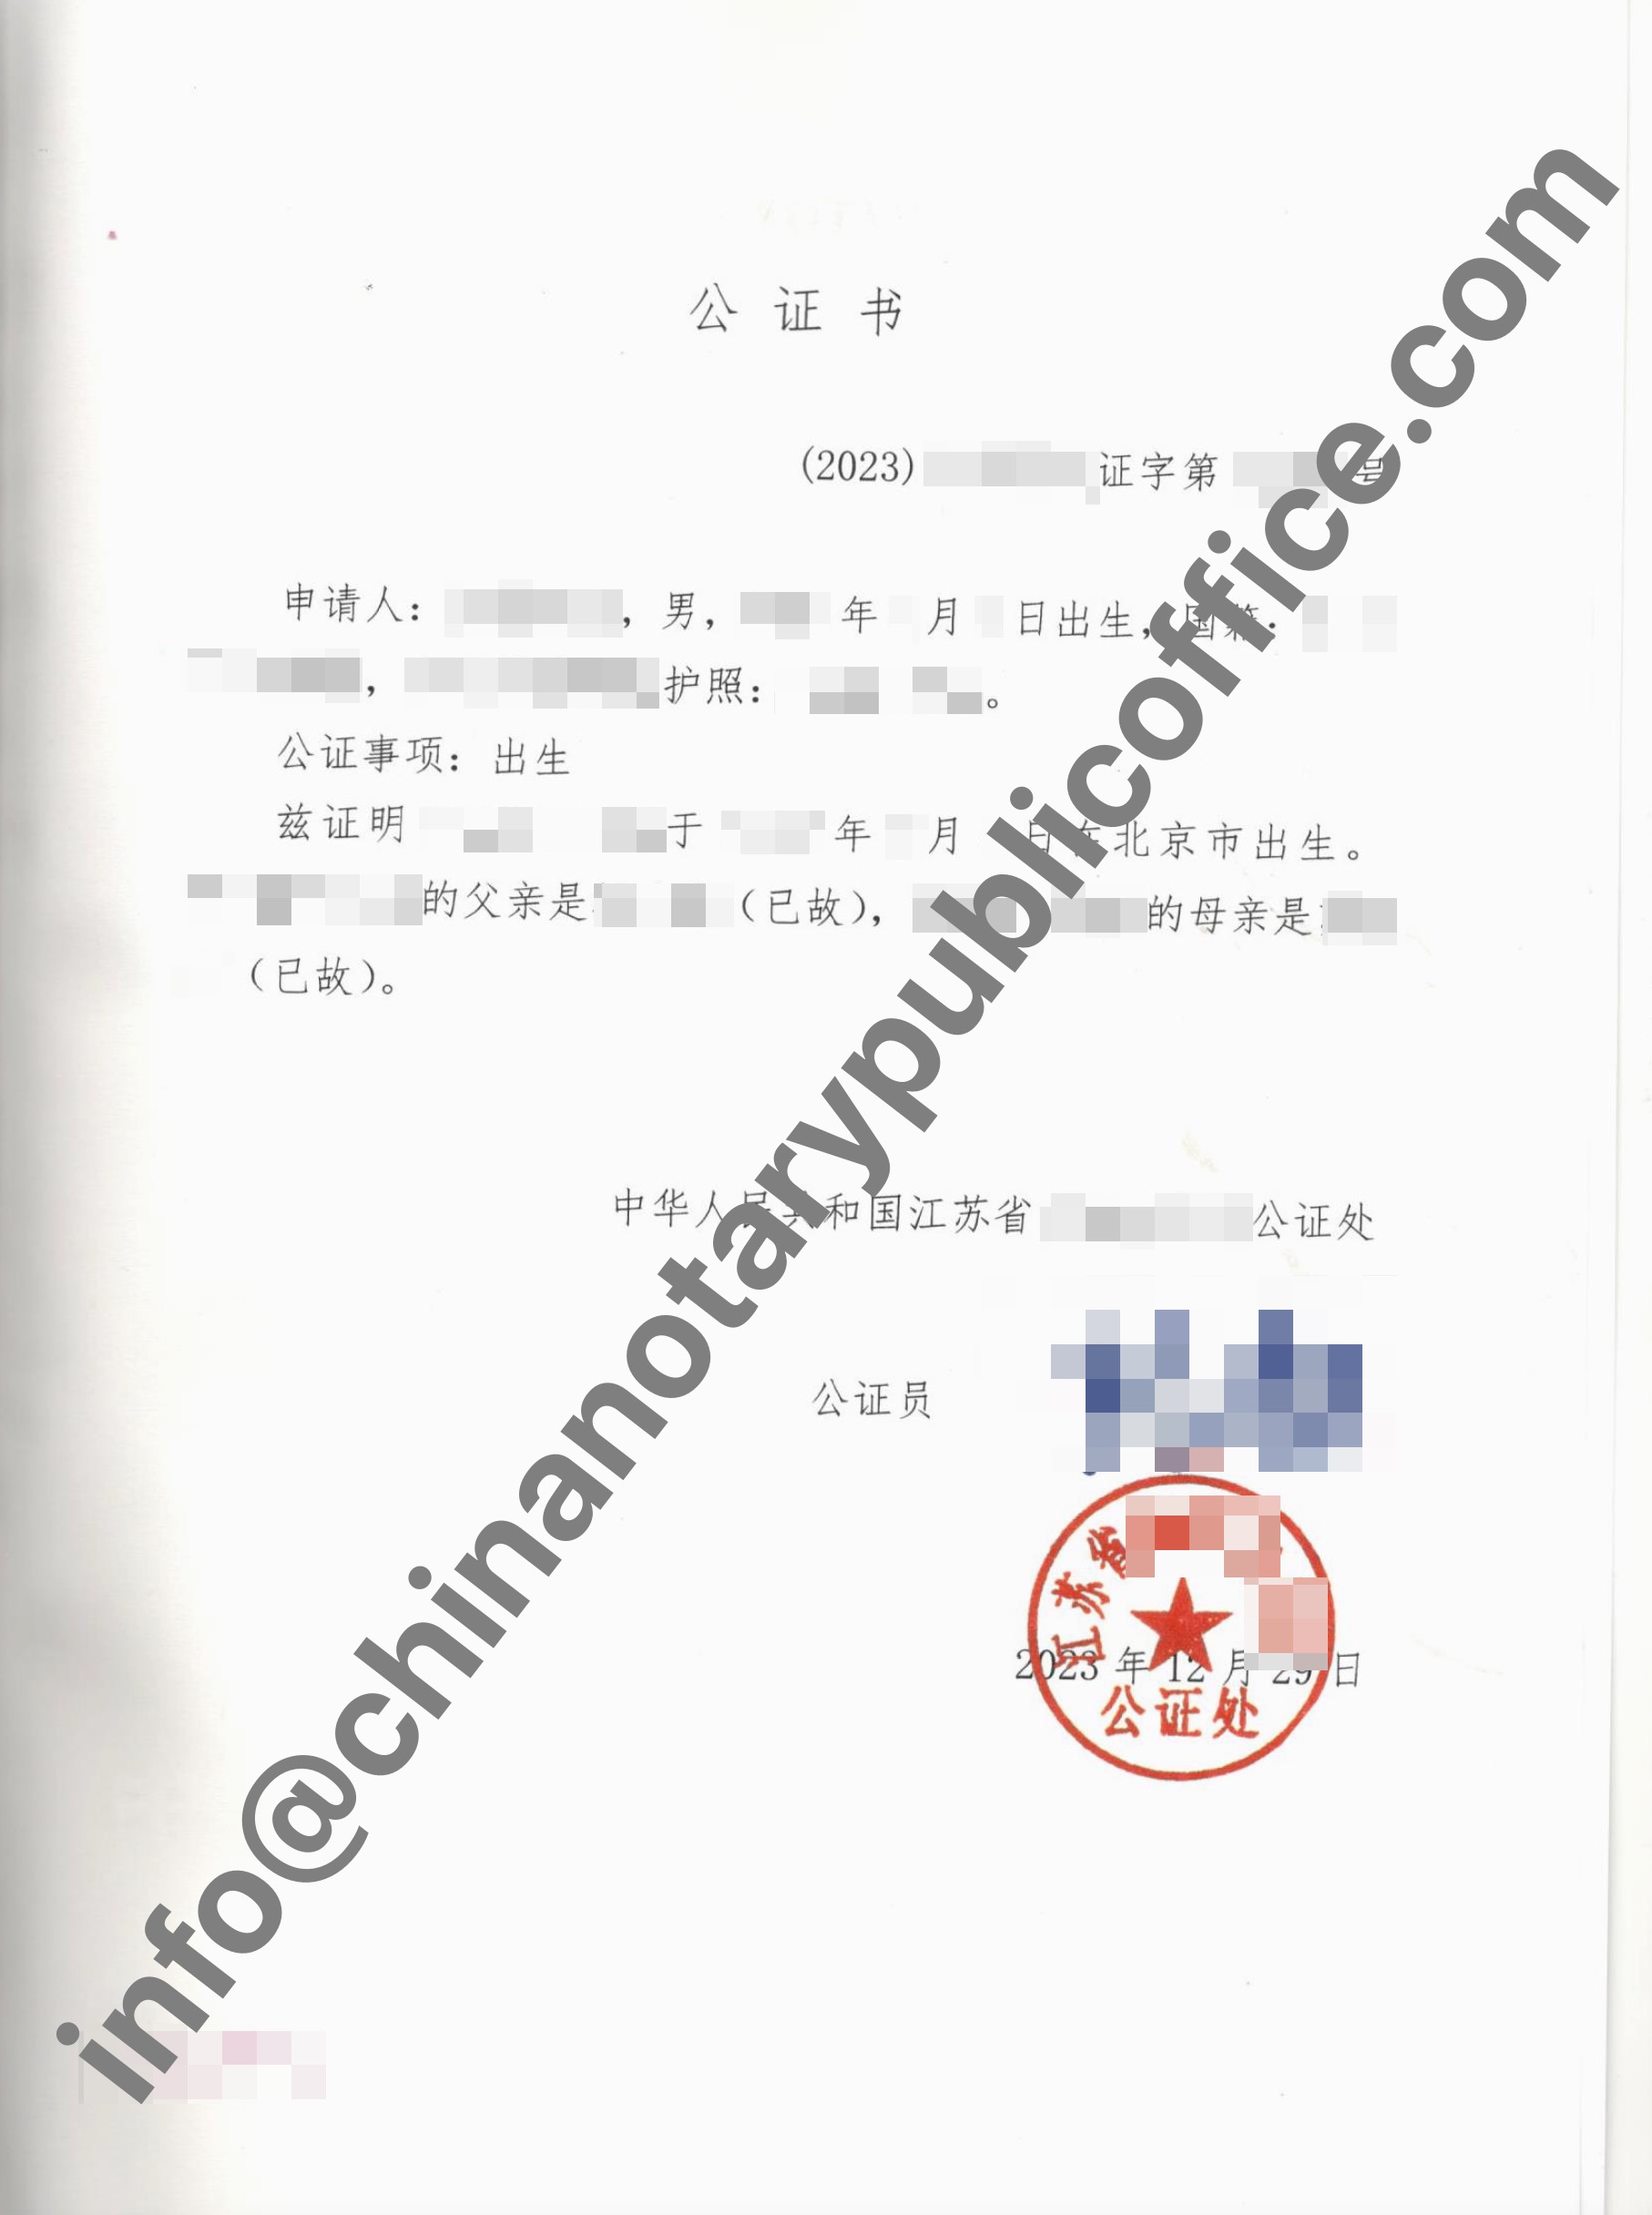 办理巴拉圭使用的出生公证书+海牙附加证明书，中国公证处海外服务中心